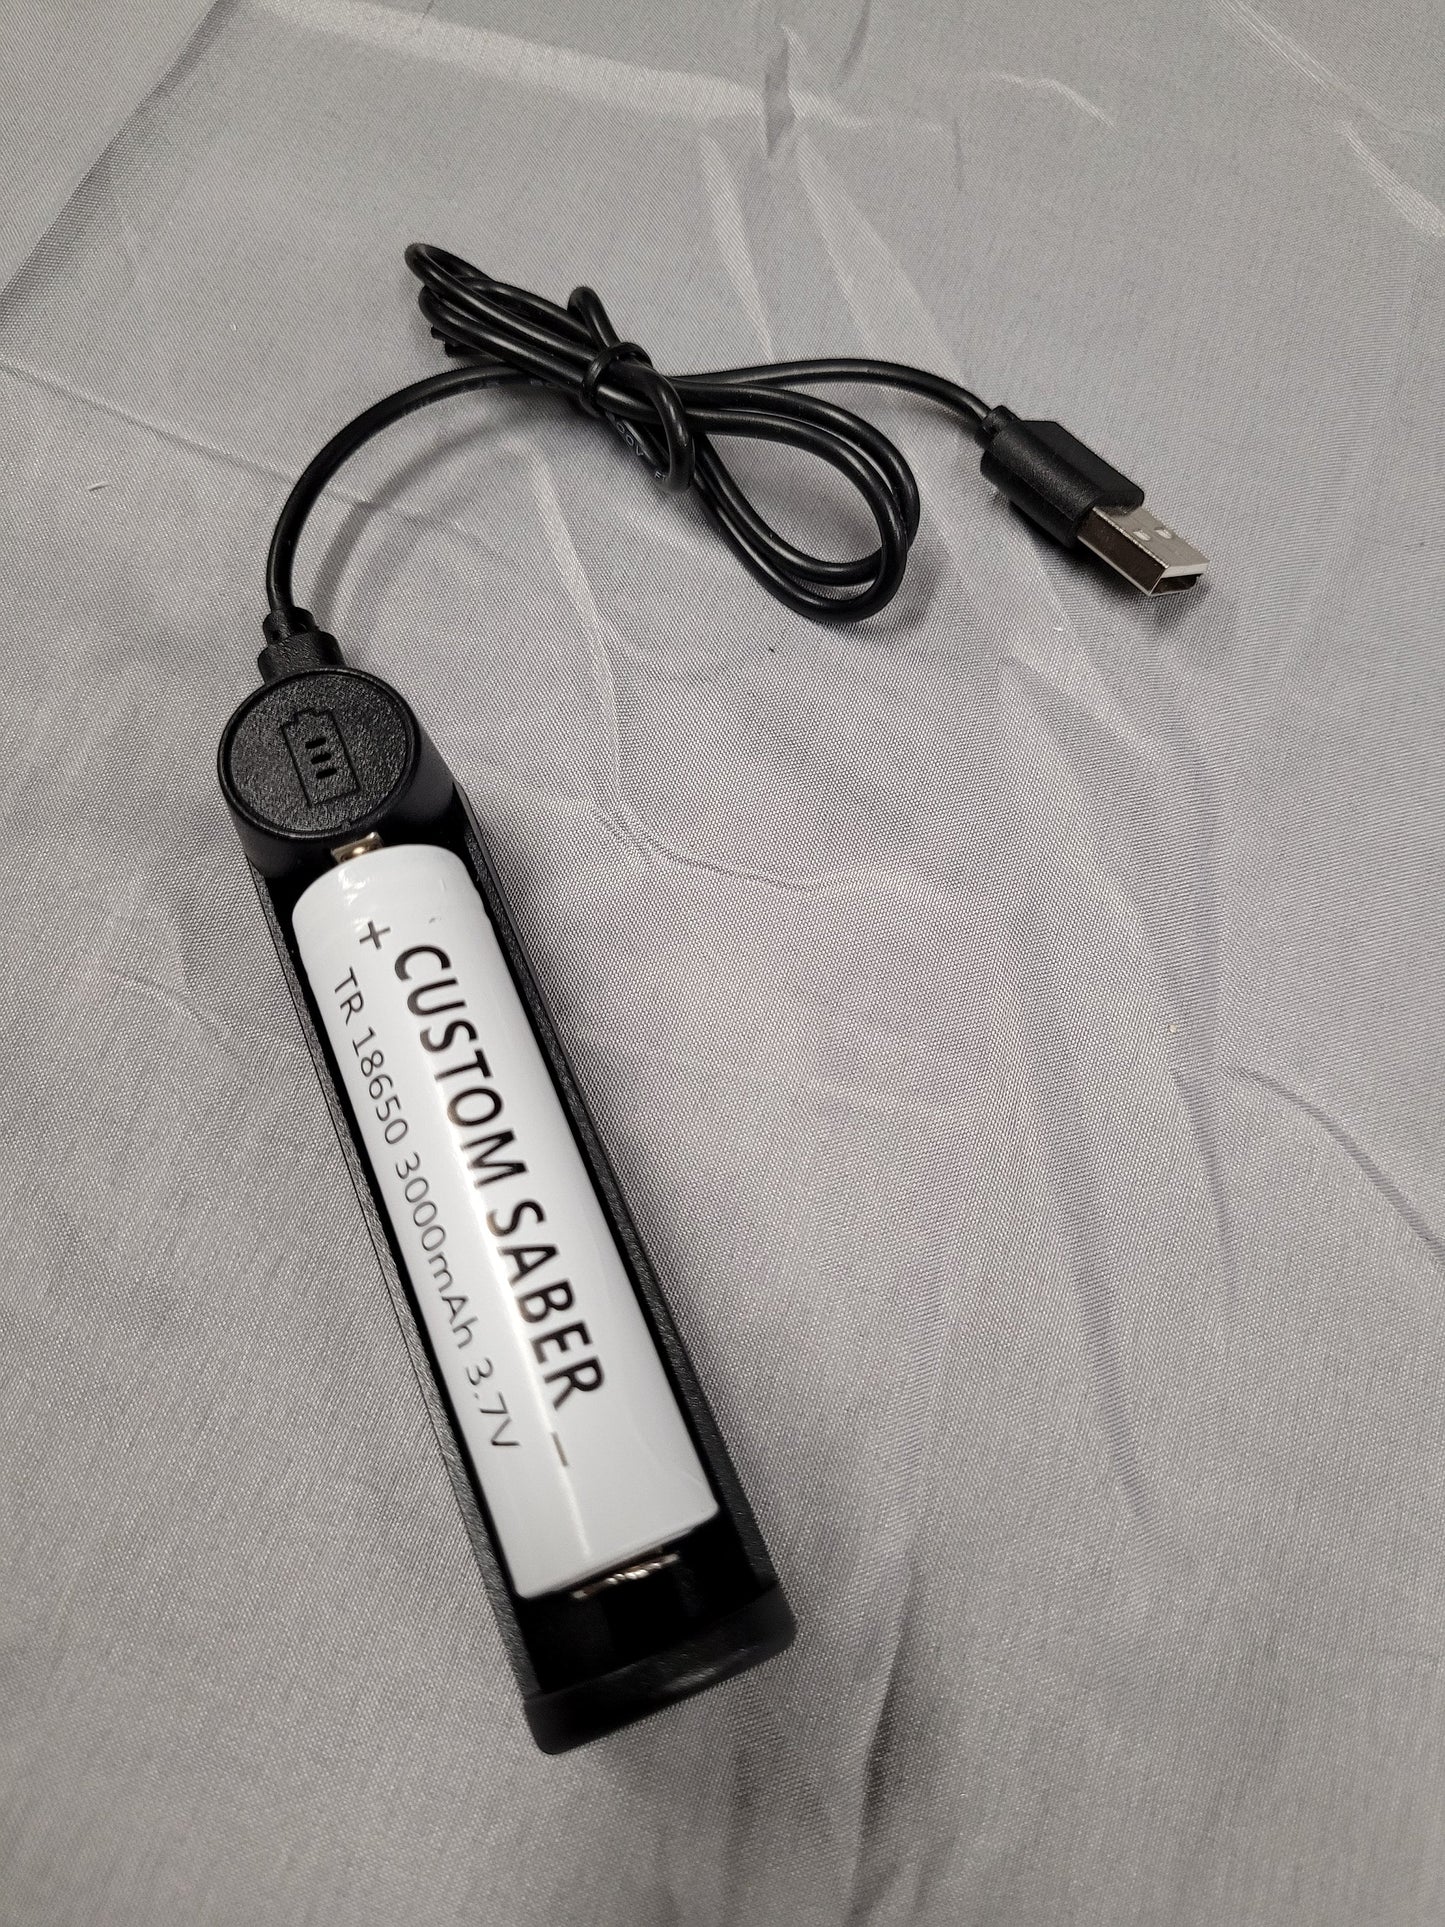 Lightsaber Battery Charger External USB Battery Charger Extra Battery Charger Star Wars Bossaber